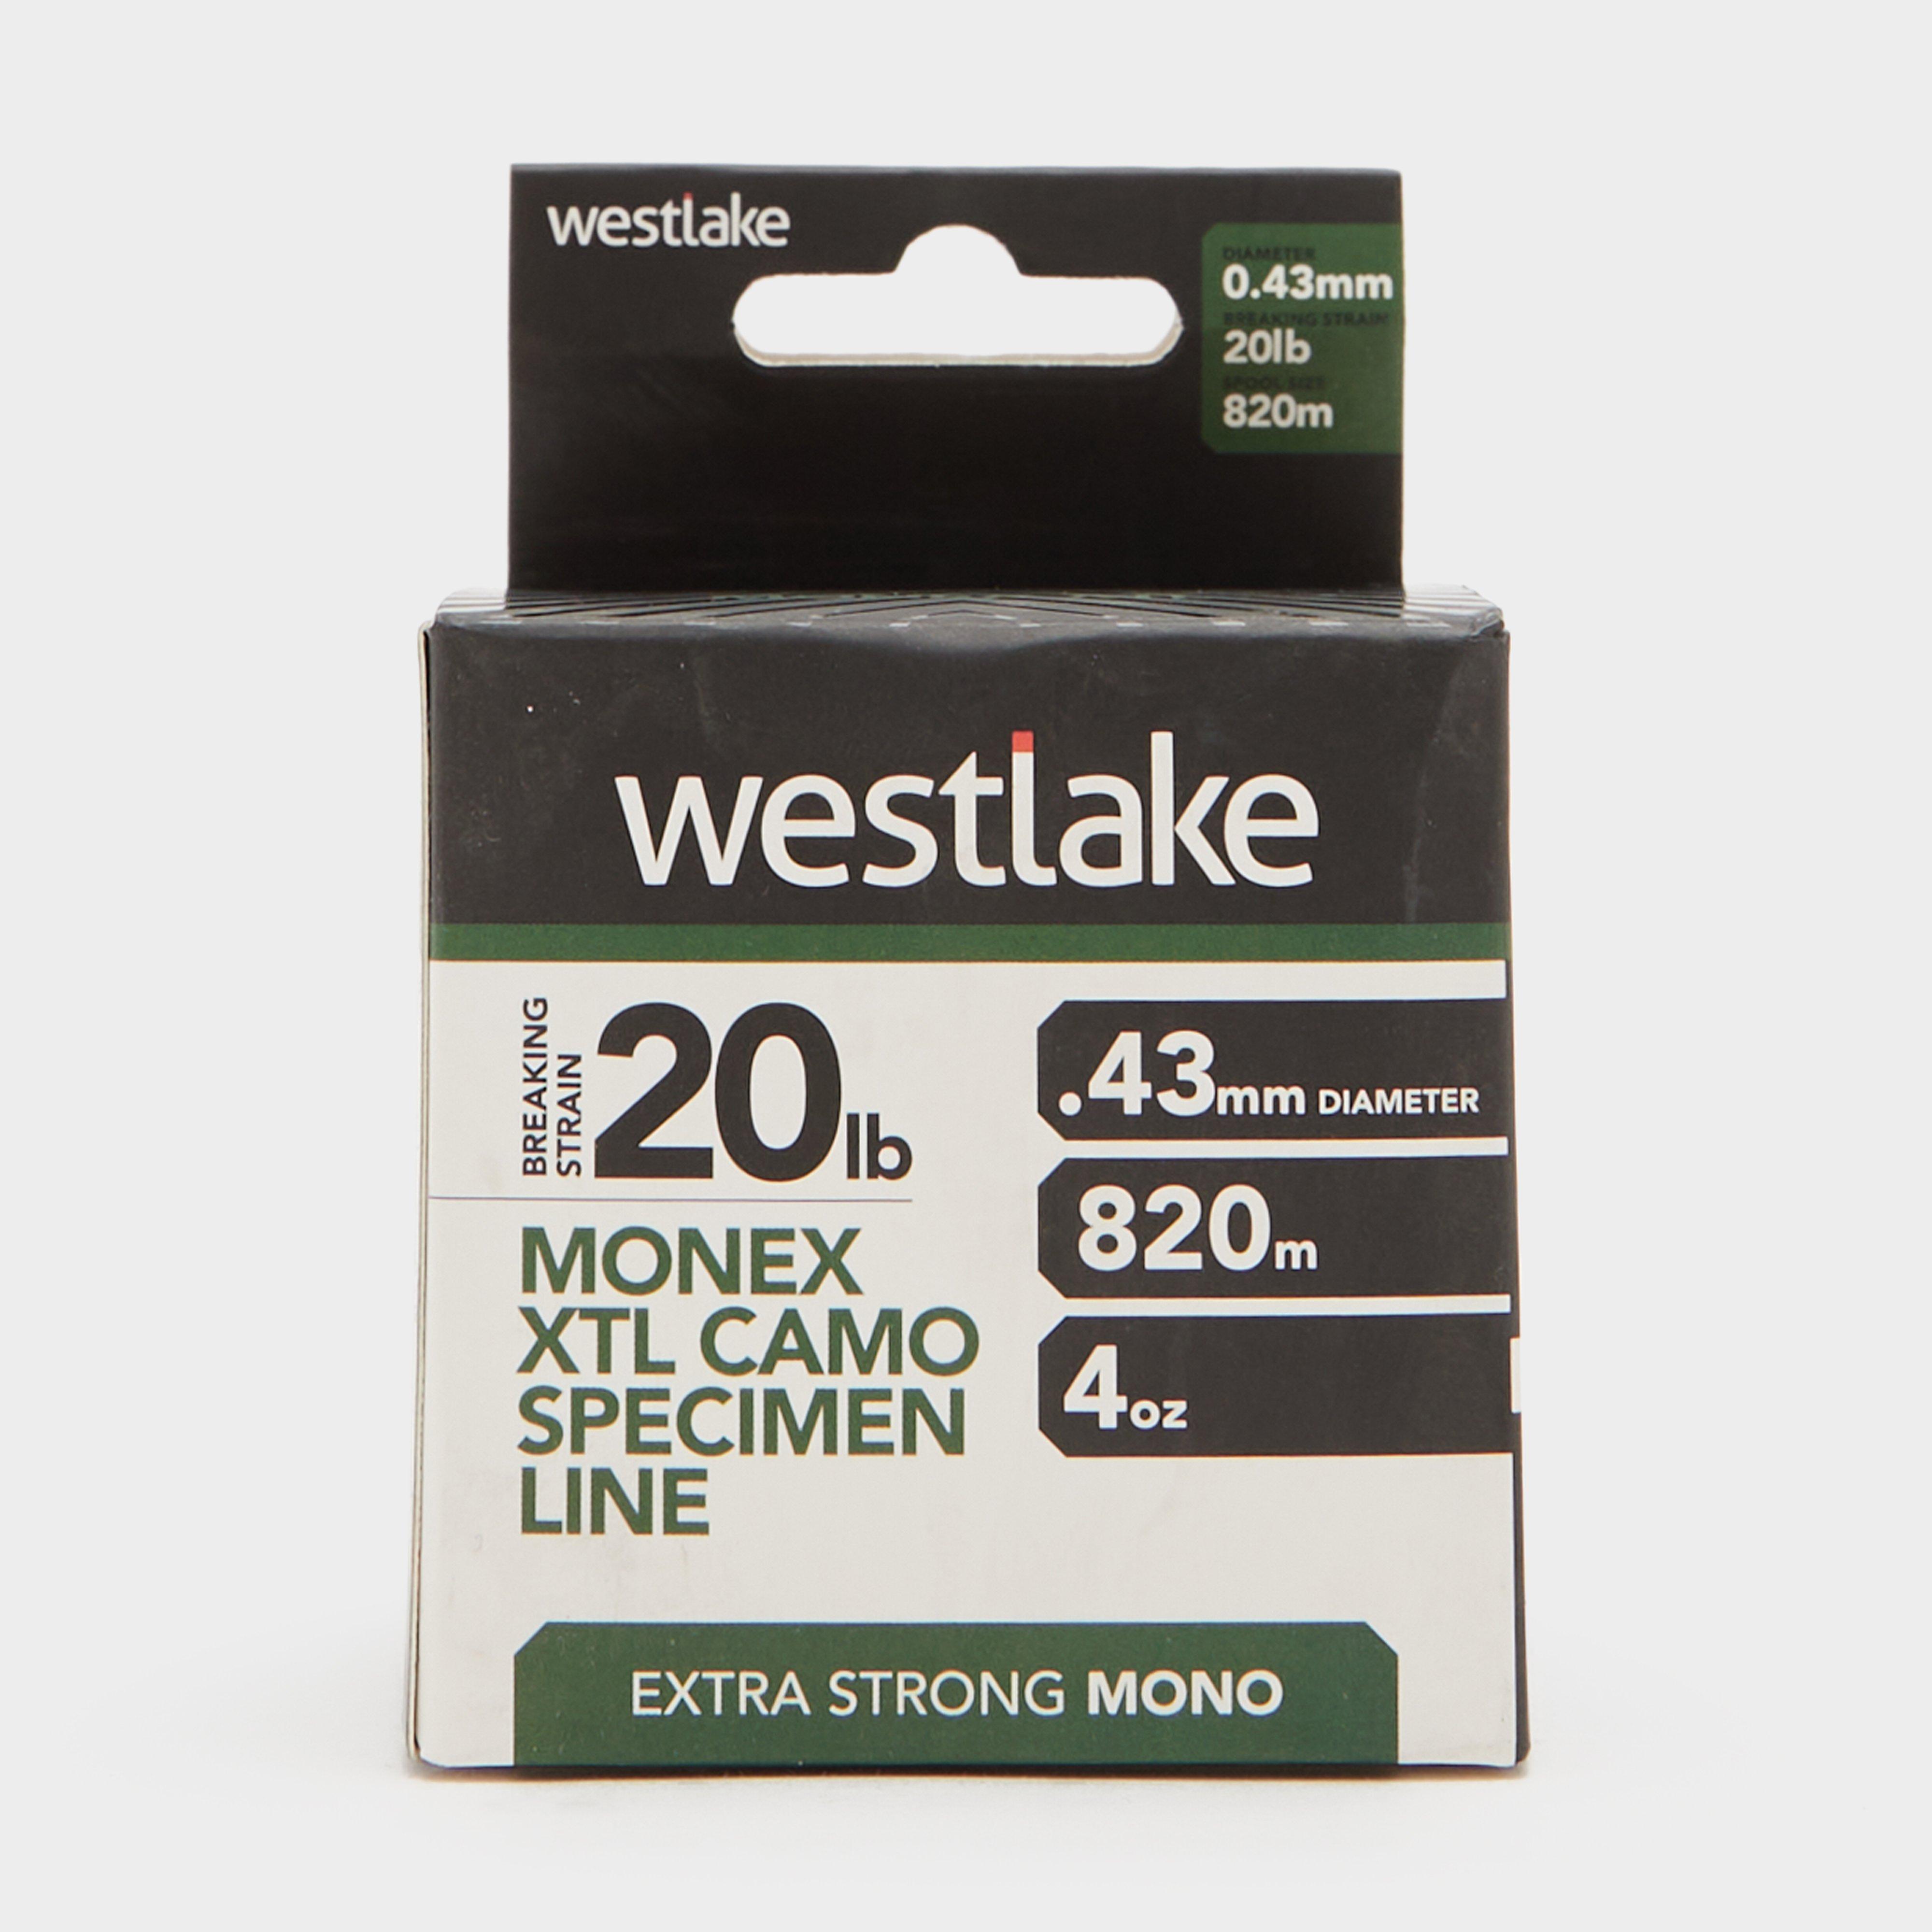 Westlake Monex Xtl Camo Specimen Line (20lb) - White/4oz  White/4oz